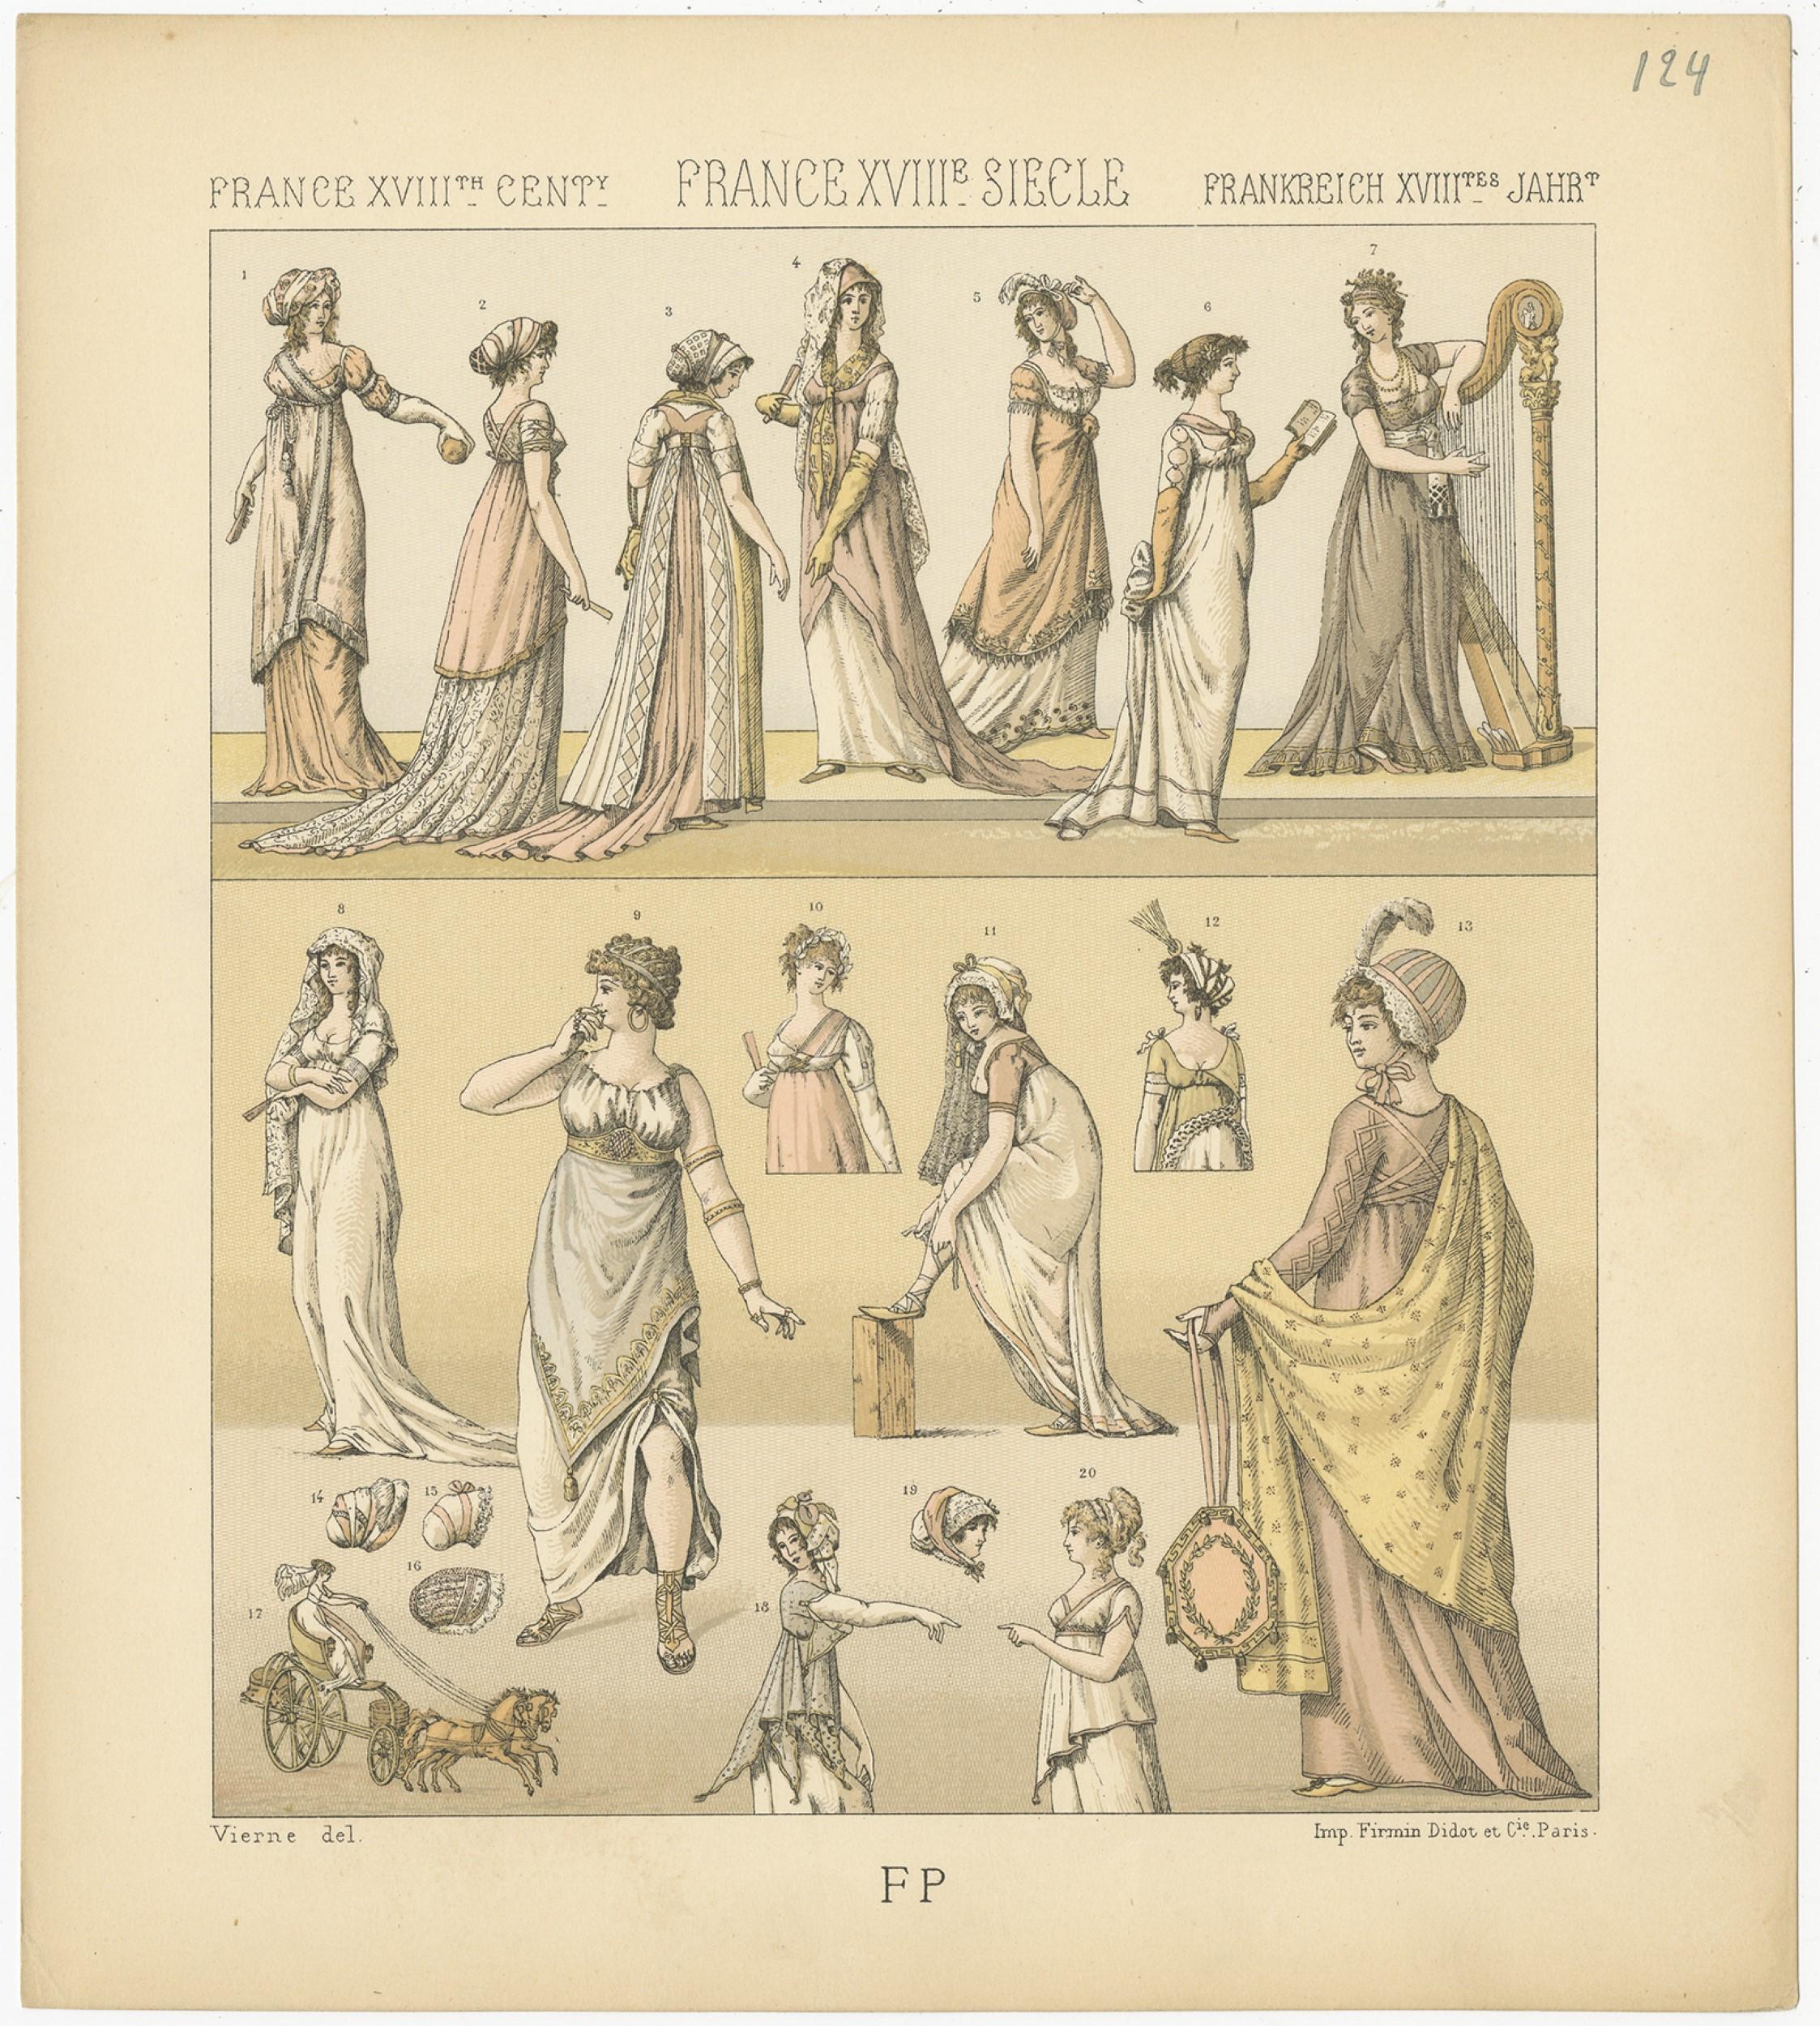 18th century women's costume